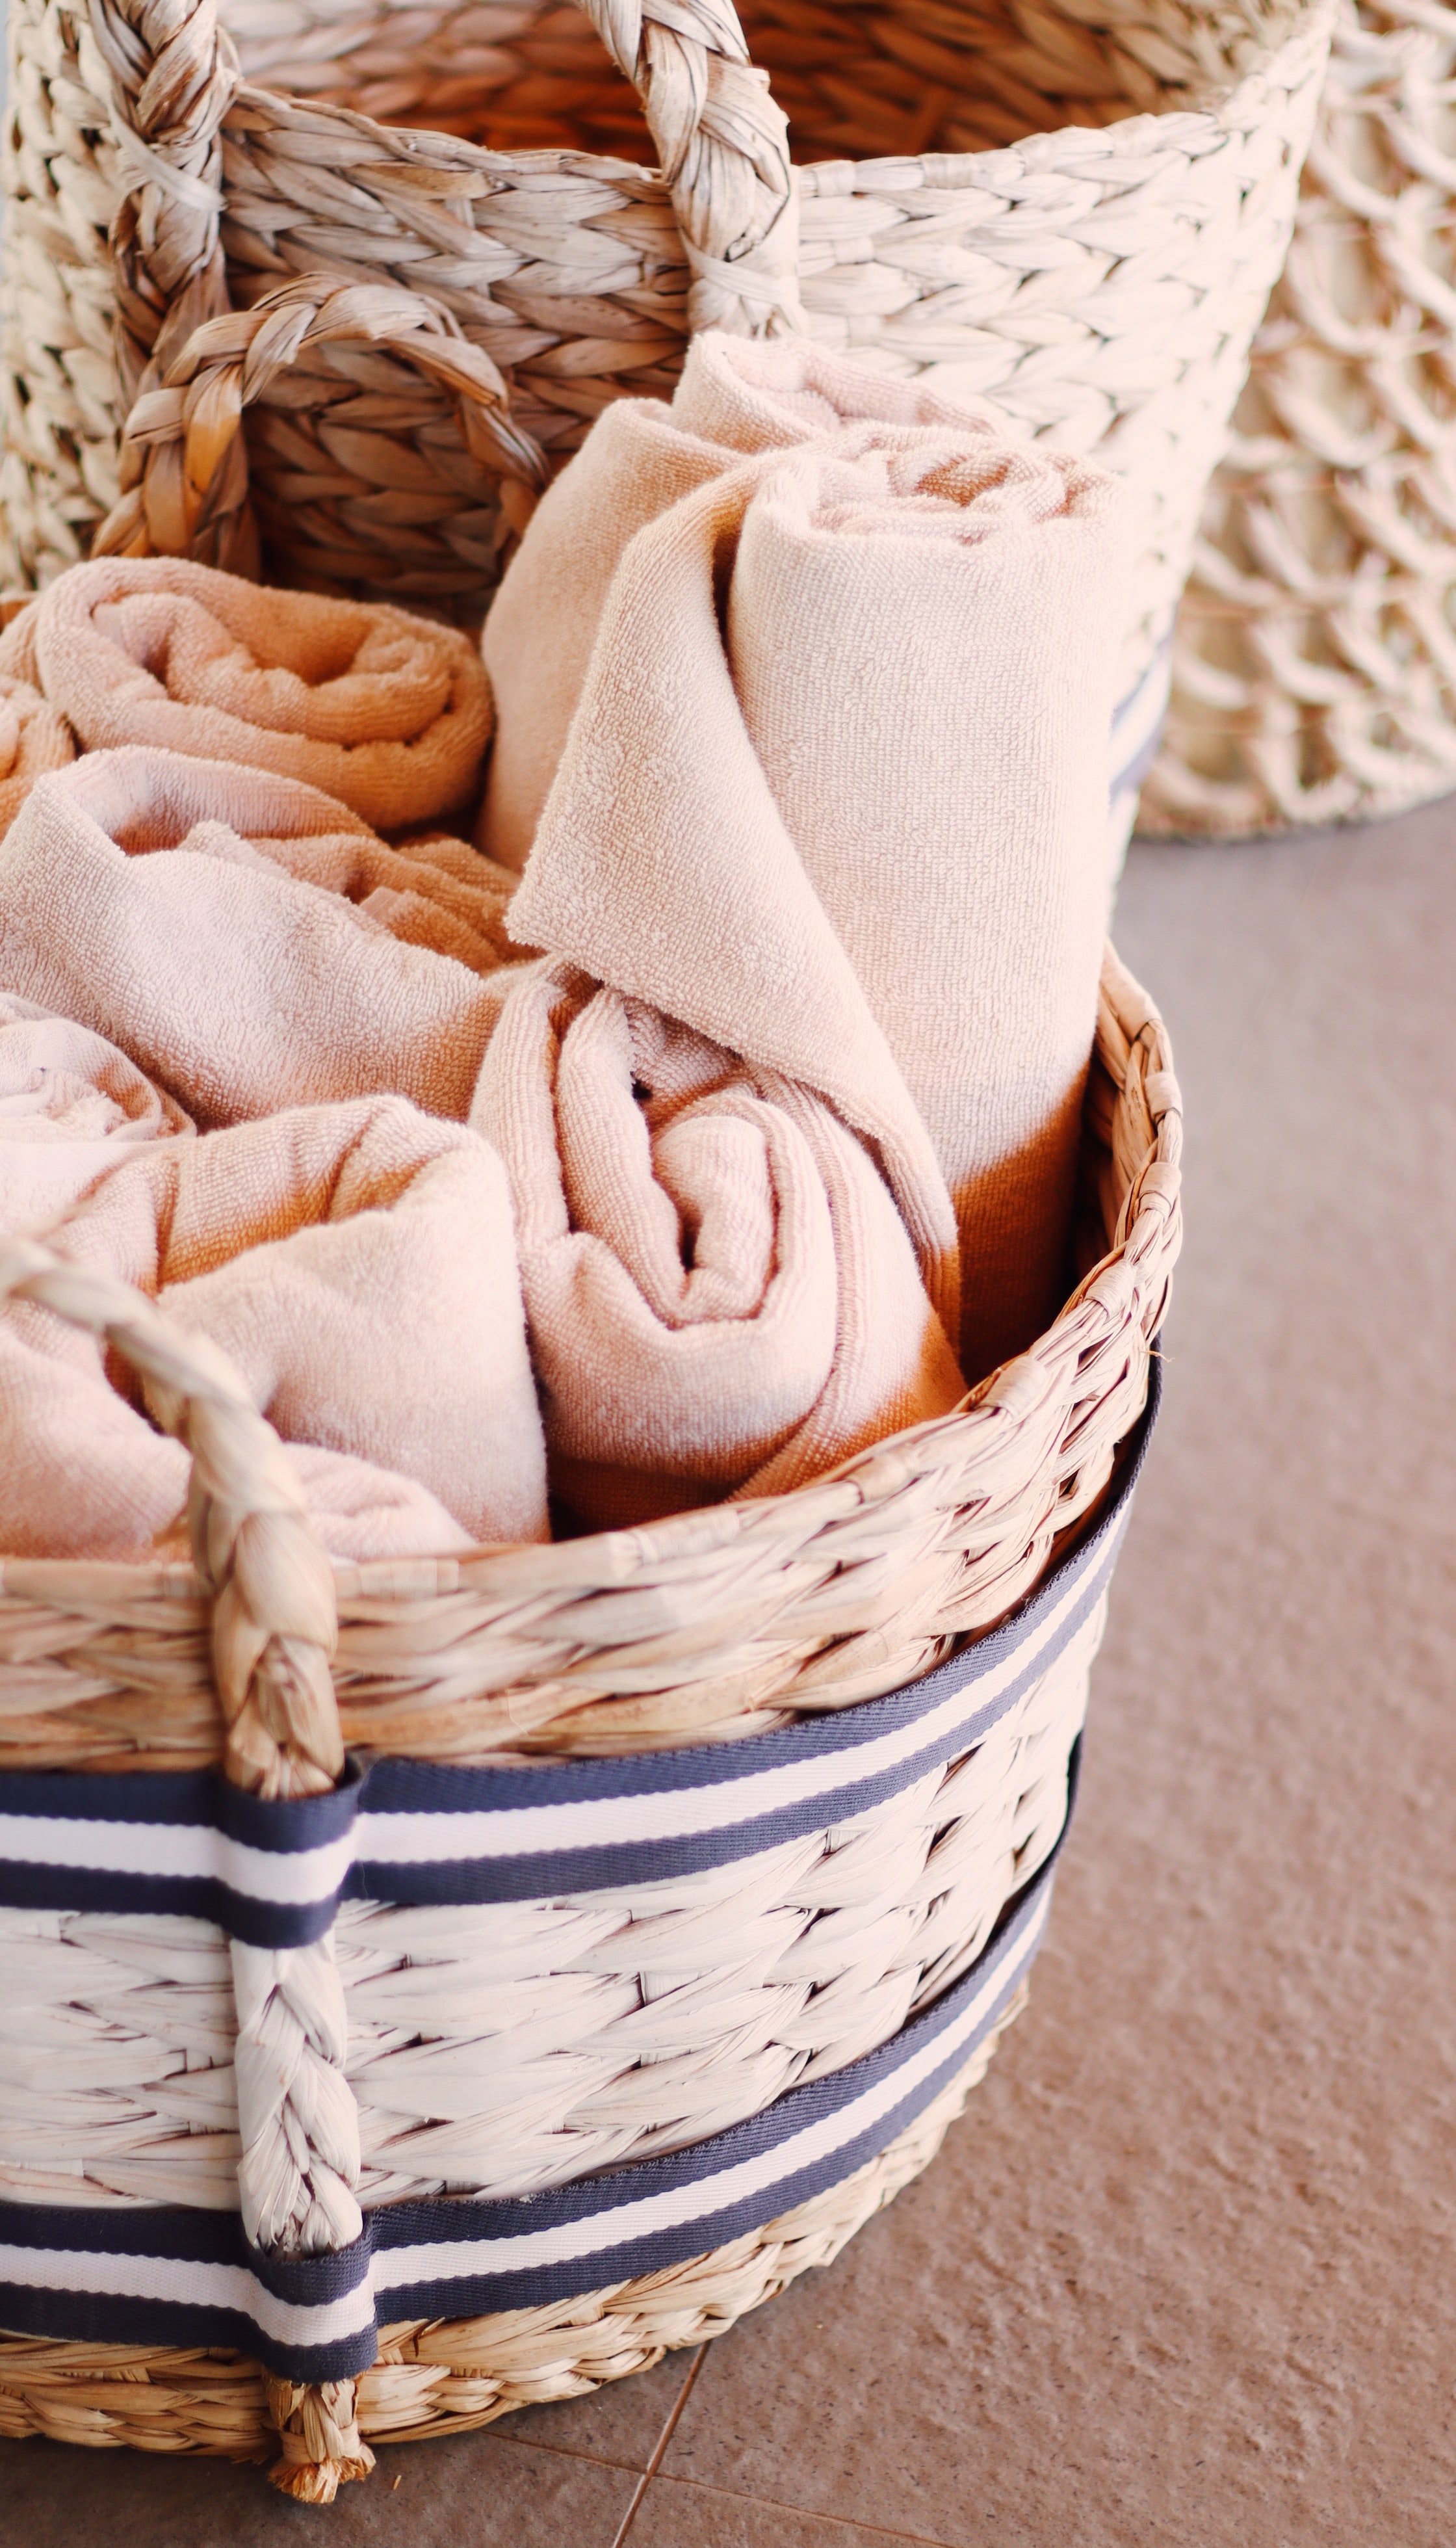 Jak przechować ręczniki